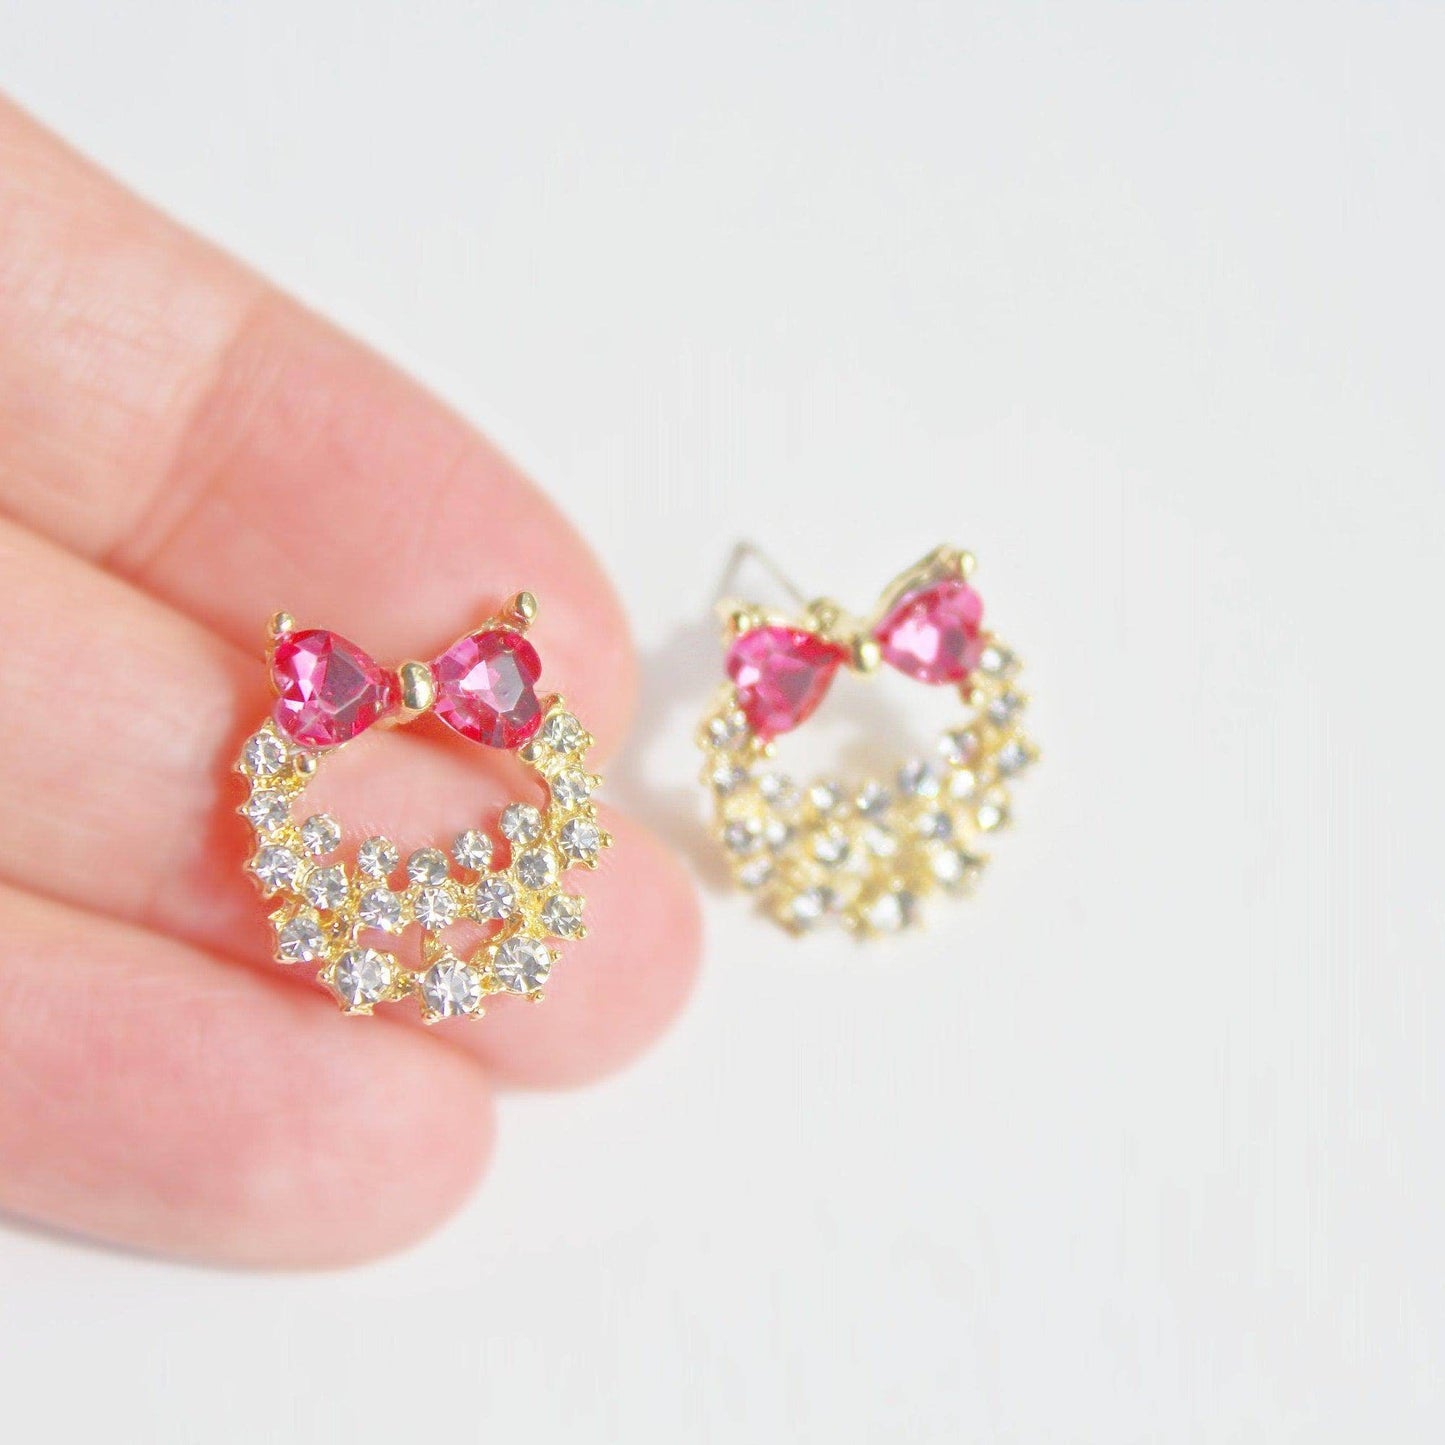 Bow Tie Wreath Earrings - Pink Heart Shape Crystal Sterling Silver Stud Earrings-Ninaouity